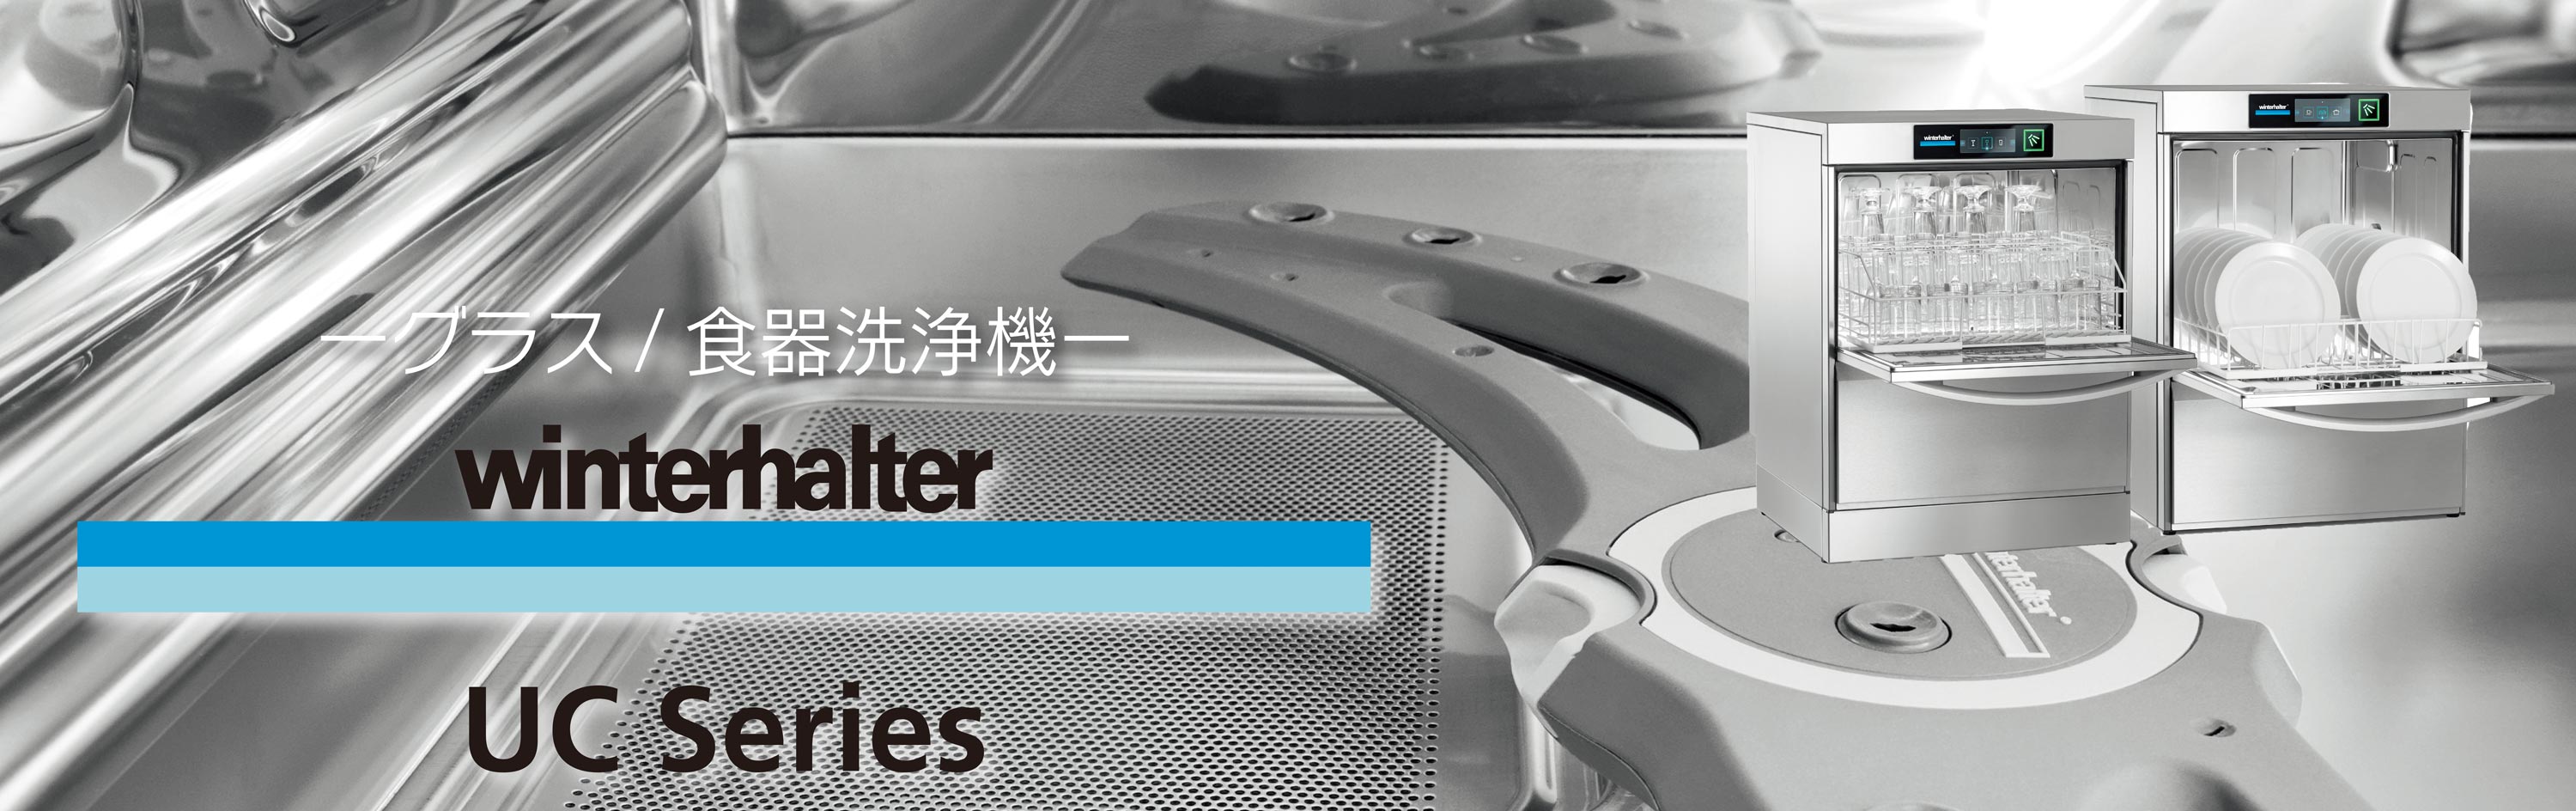 ウィンターハルター50Hz専用 グラス用洗浄機 UC-S 2016年製 幅460×奥行465×高さ710mm 厨房機器 飲食店 店舗 - 30